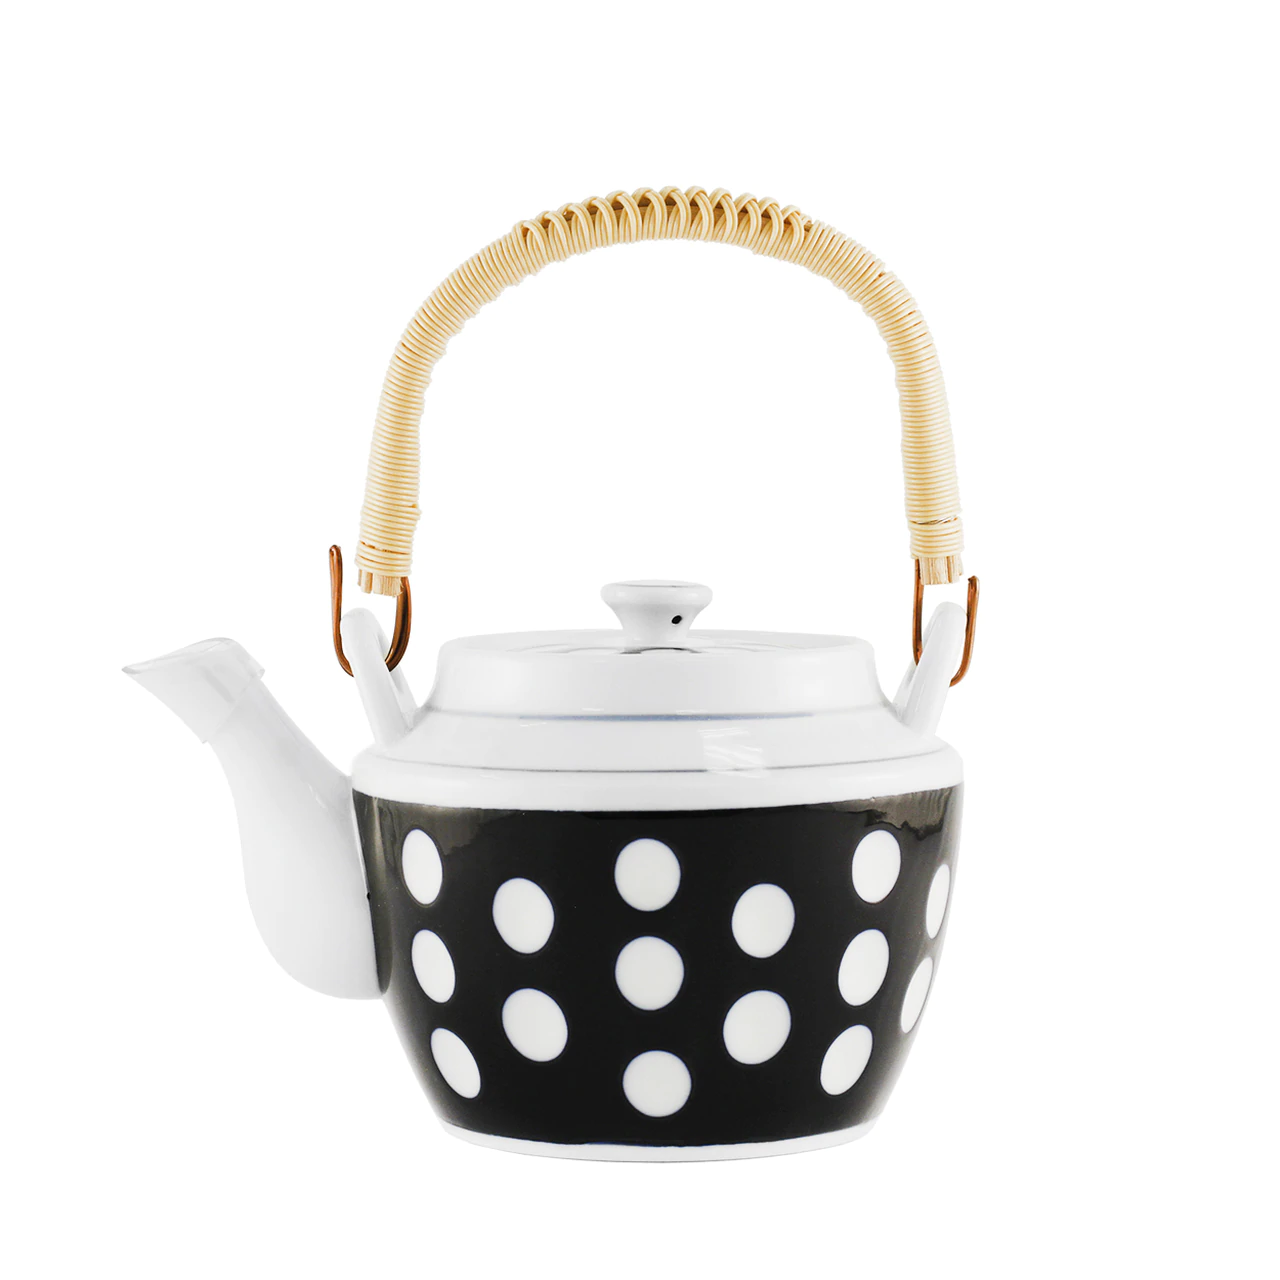 日本波点茶壶 Polka Dot Teapot 52 fl oz【日本进口】